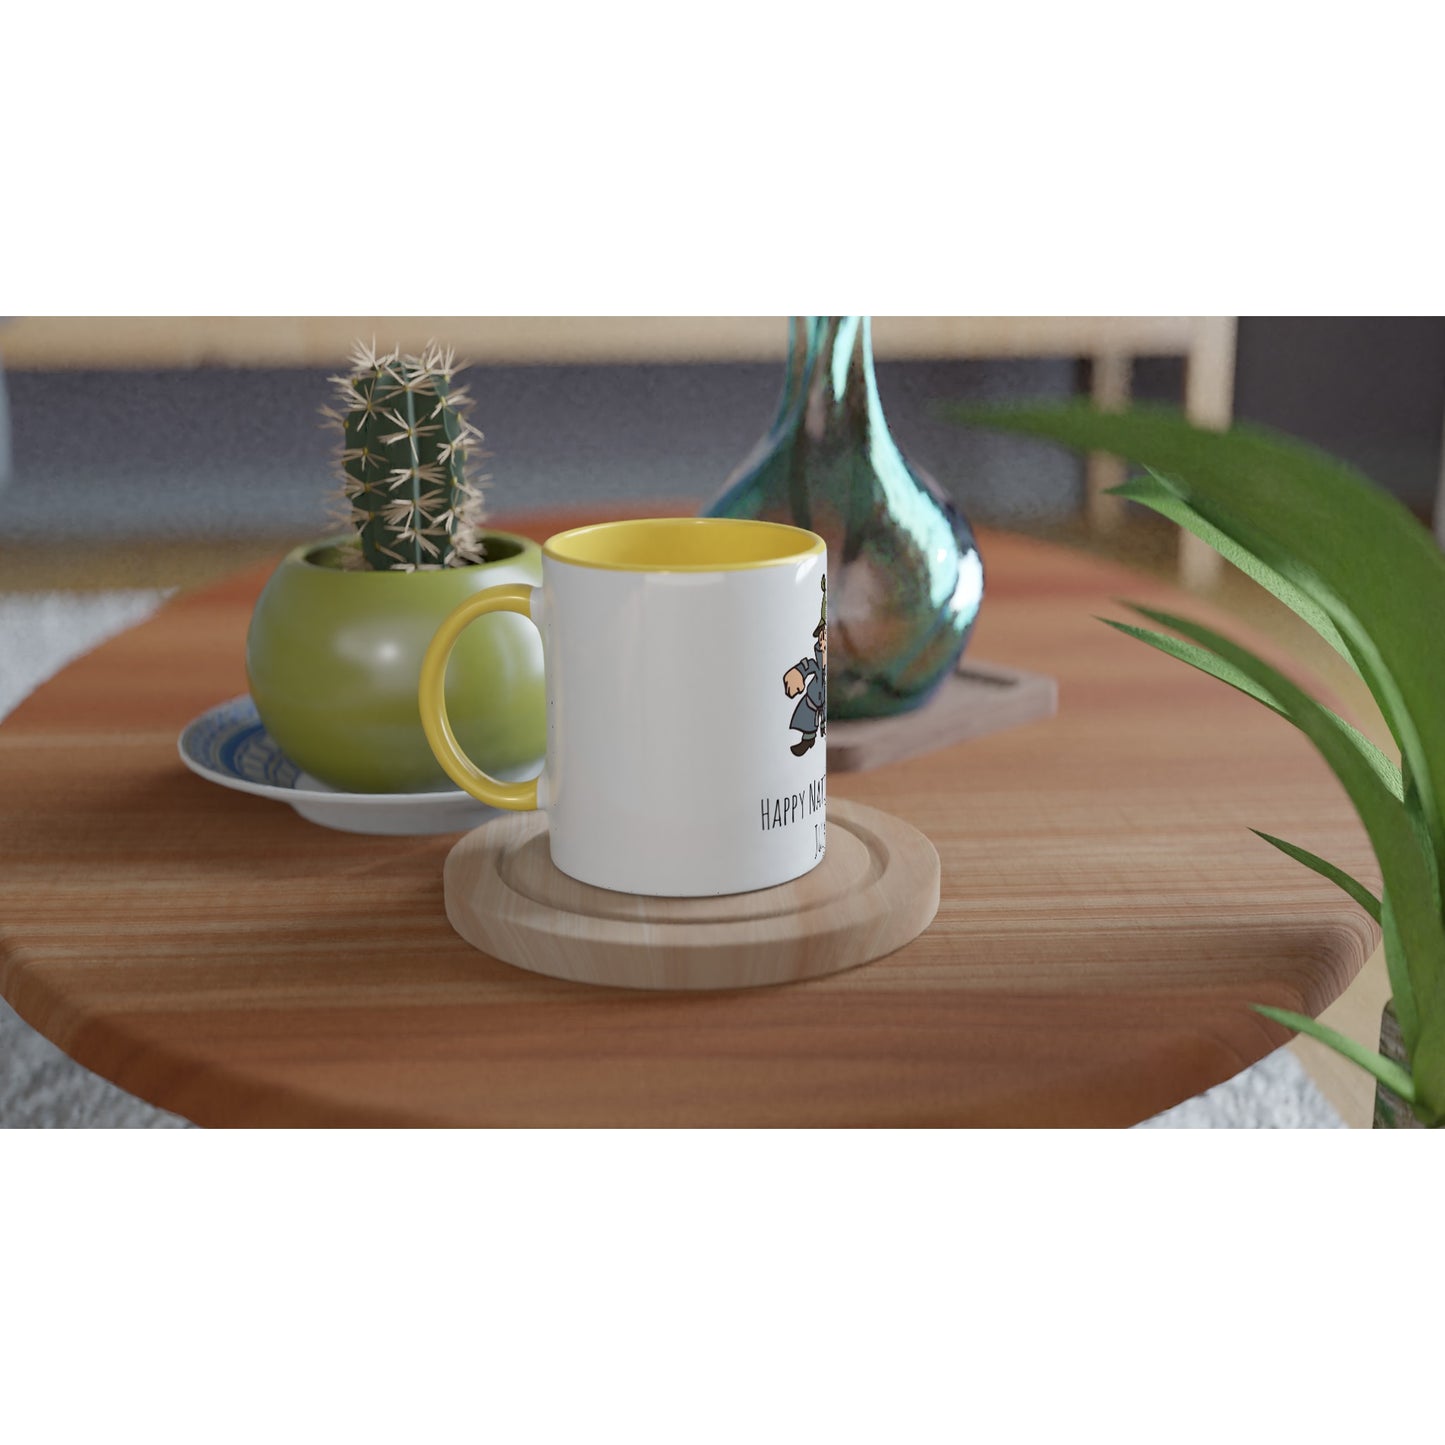 White 11oz Ceramic Mug with Color Inside - National PI Day - Option 2